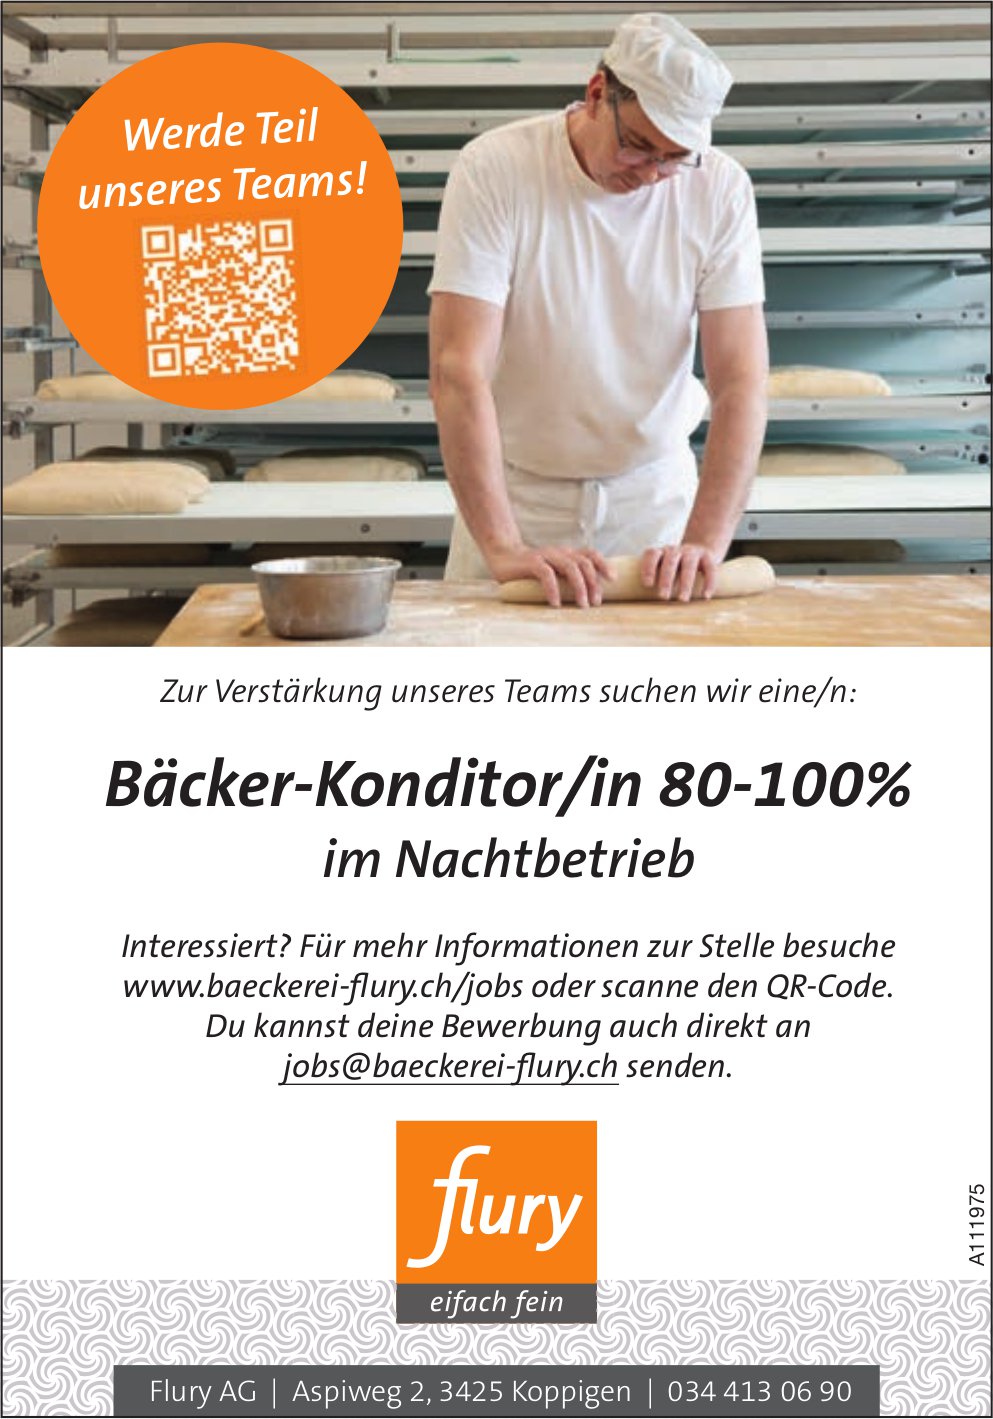 Bäcker-Konditor/in 80-100% im Nachtbetrieb, Flury AG, Koppigen, gesucht